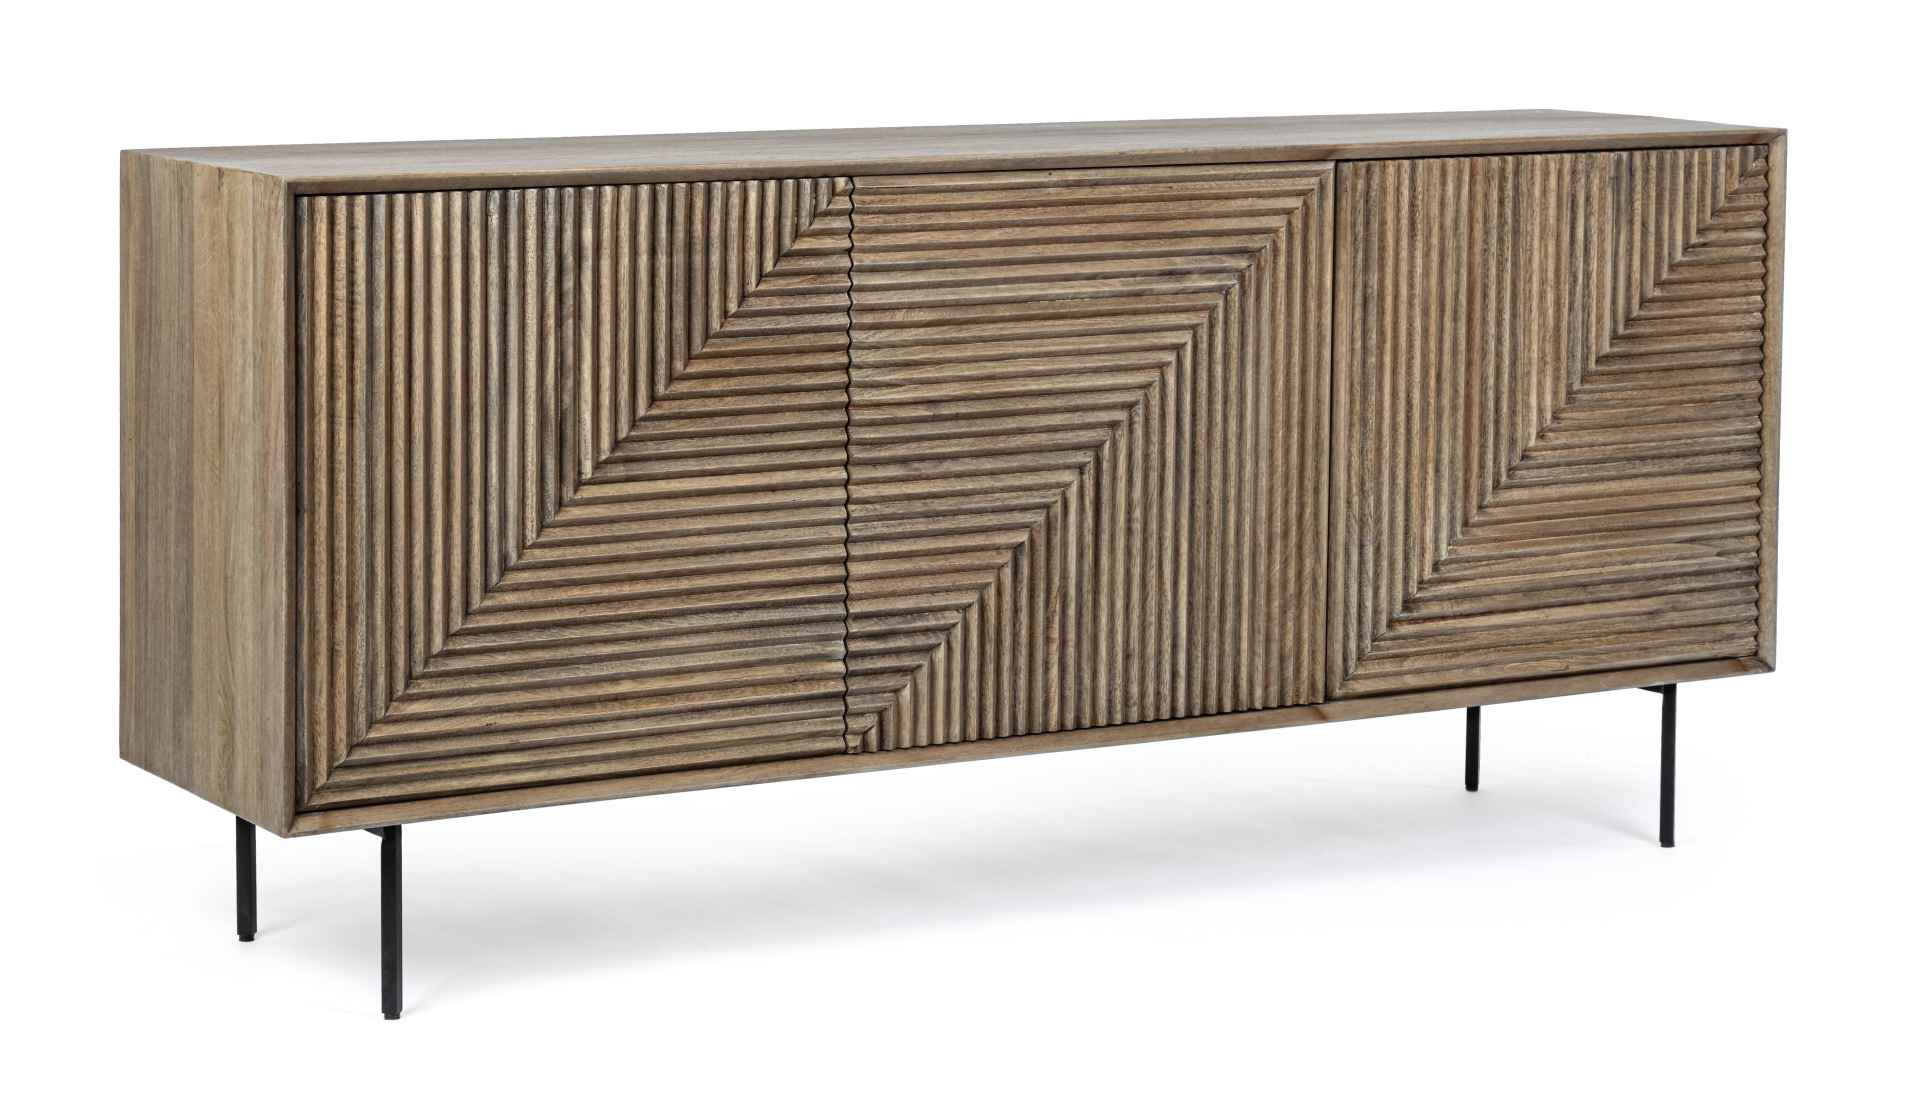 Das Sideboard Darsey überzeugt mit seinem klassischen Design. Gefertigt wurde es aus Mango-Holz, welches einen natürlichen Farbton besitzt. Das Gestell ist aus Metall und hat eine schwarze Farbe. Das Sideboard verfügt über drei Türen. Die Breite beträgt 1